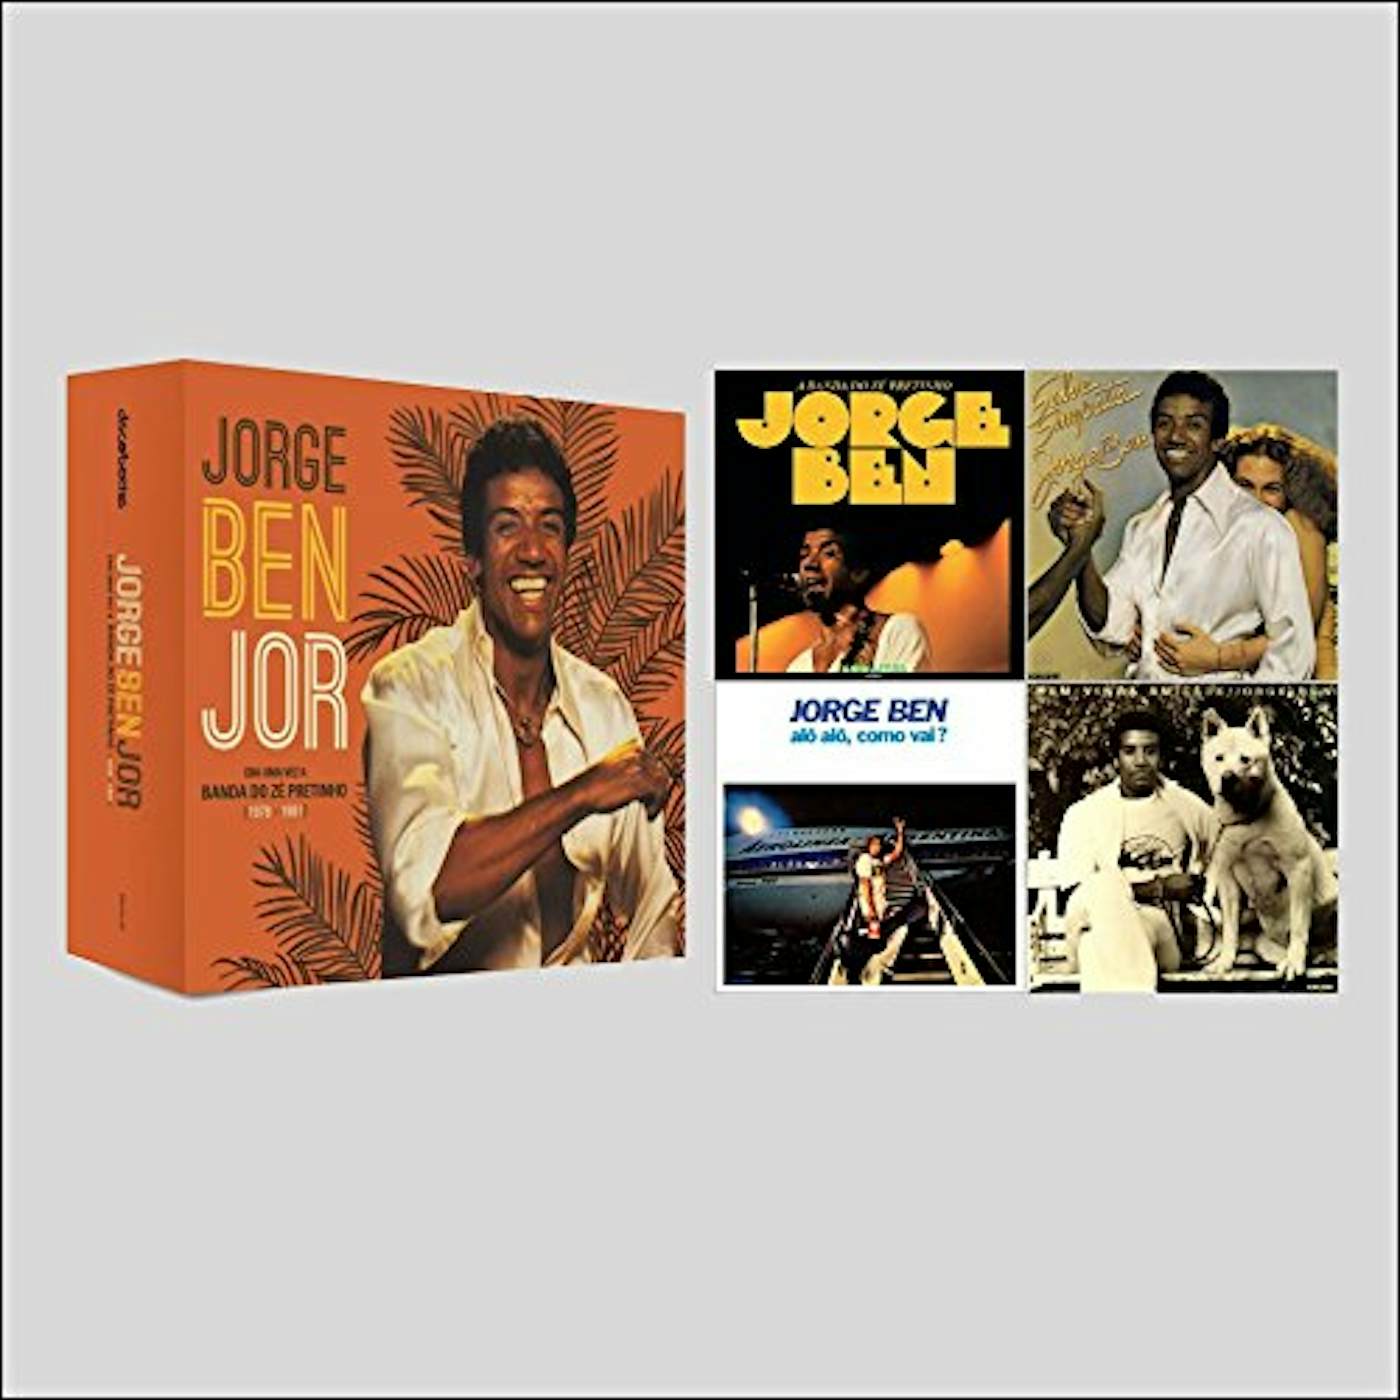 Jorge Ben Jor ERA UMA VEZ A BANDA DO ZE PRETINHO (1978-1981) CD